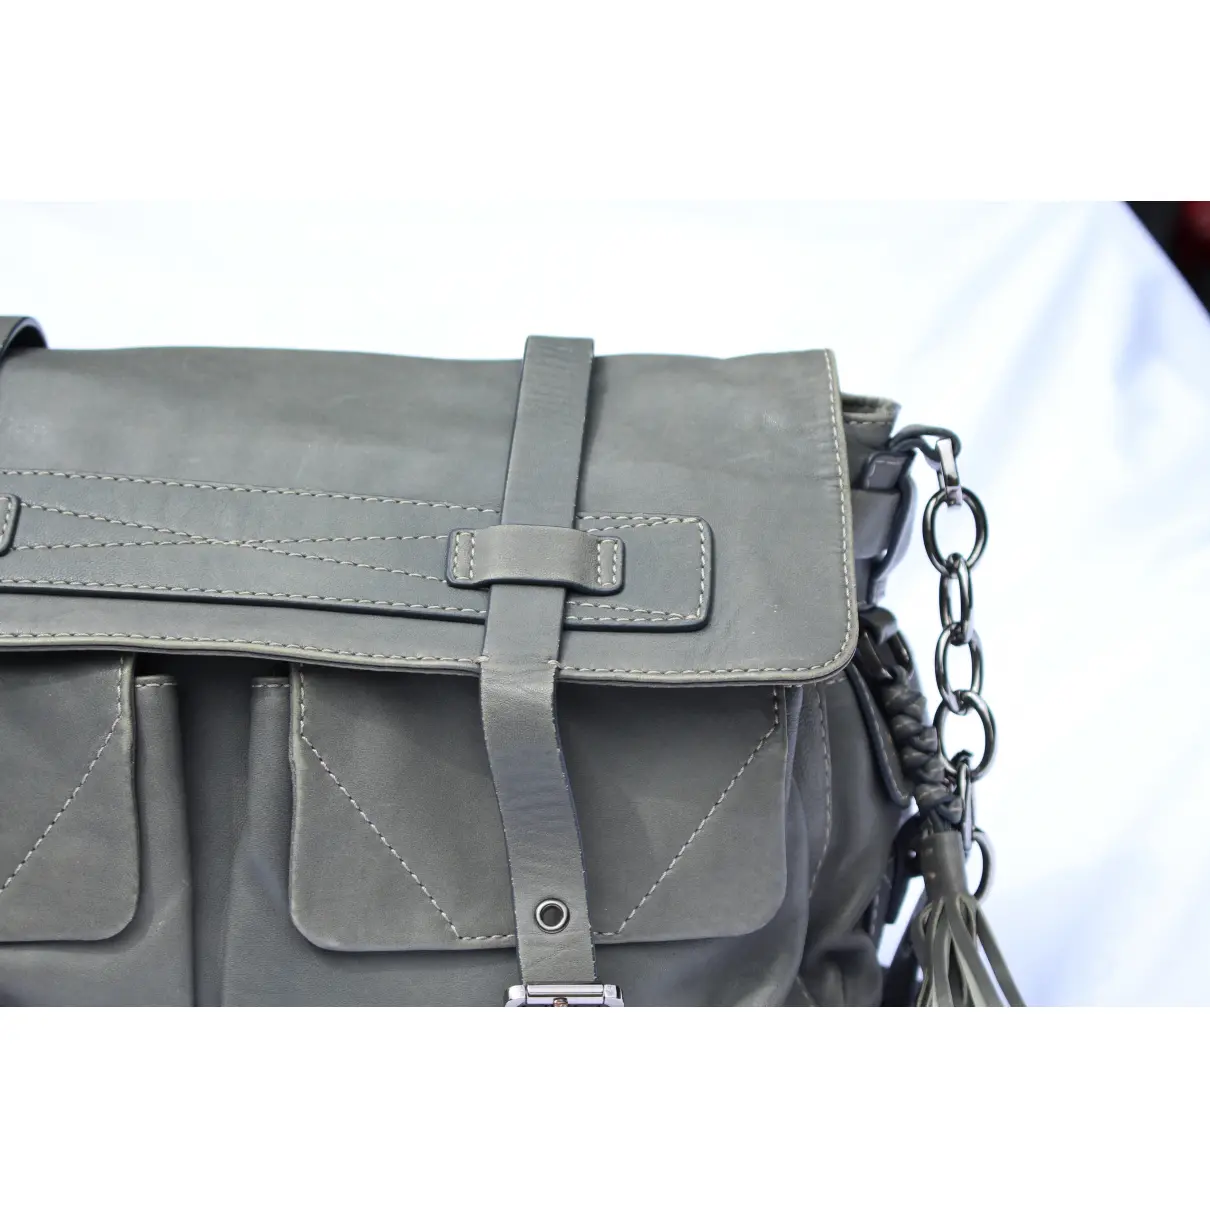 Buy Barbara Bui Leather satchel online